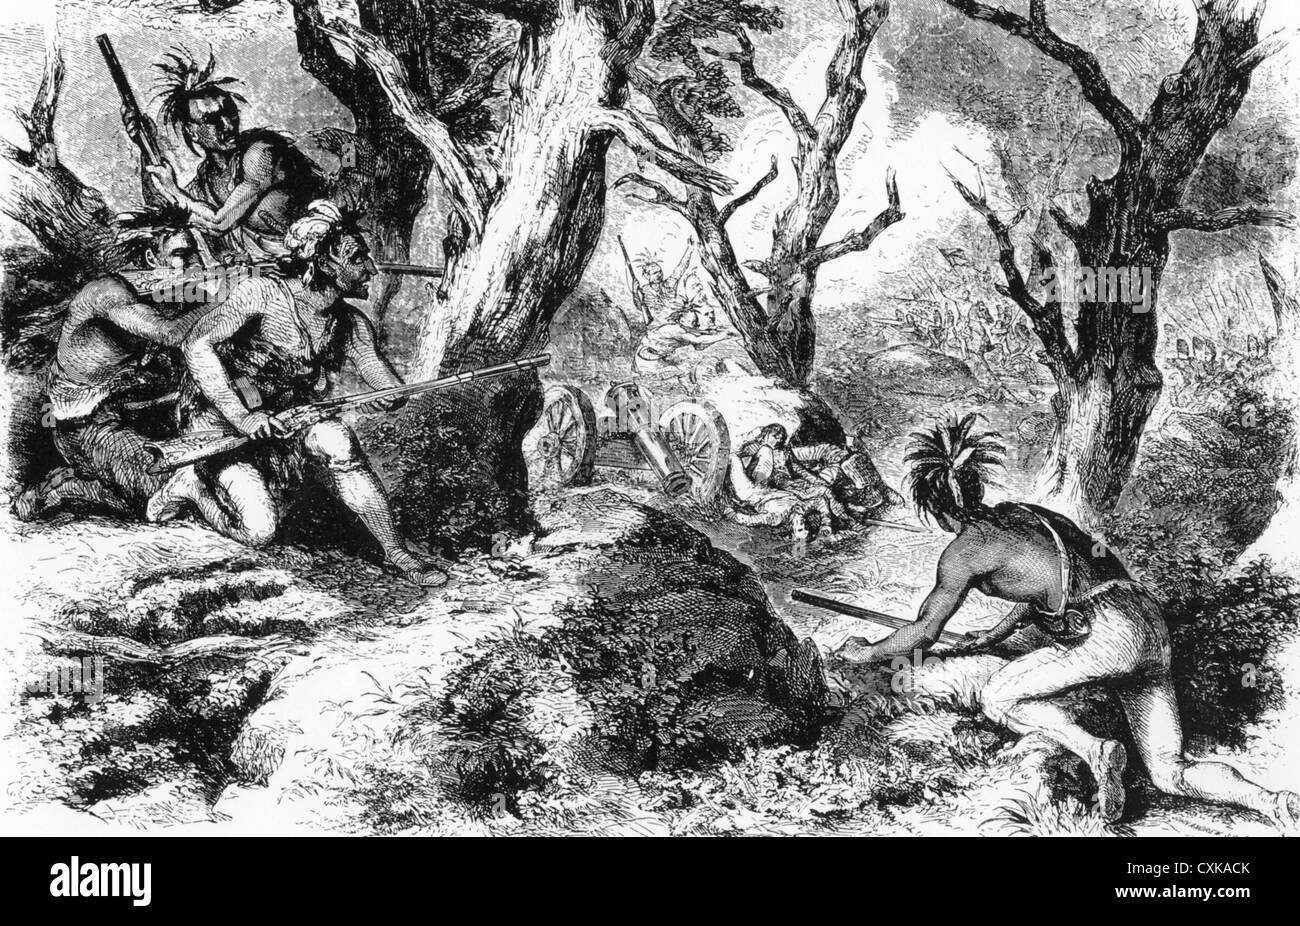 EDWARD BRADDOCK (1695-1775) soldat britannique tombe dans une embuscade et tués par des français et alliés indiens près de Fort Duquesne 9 Juillet 1775 Banque D'Images